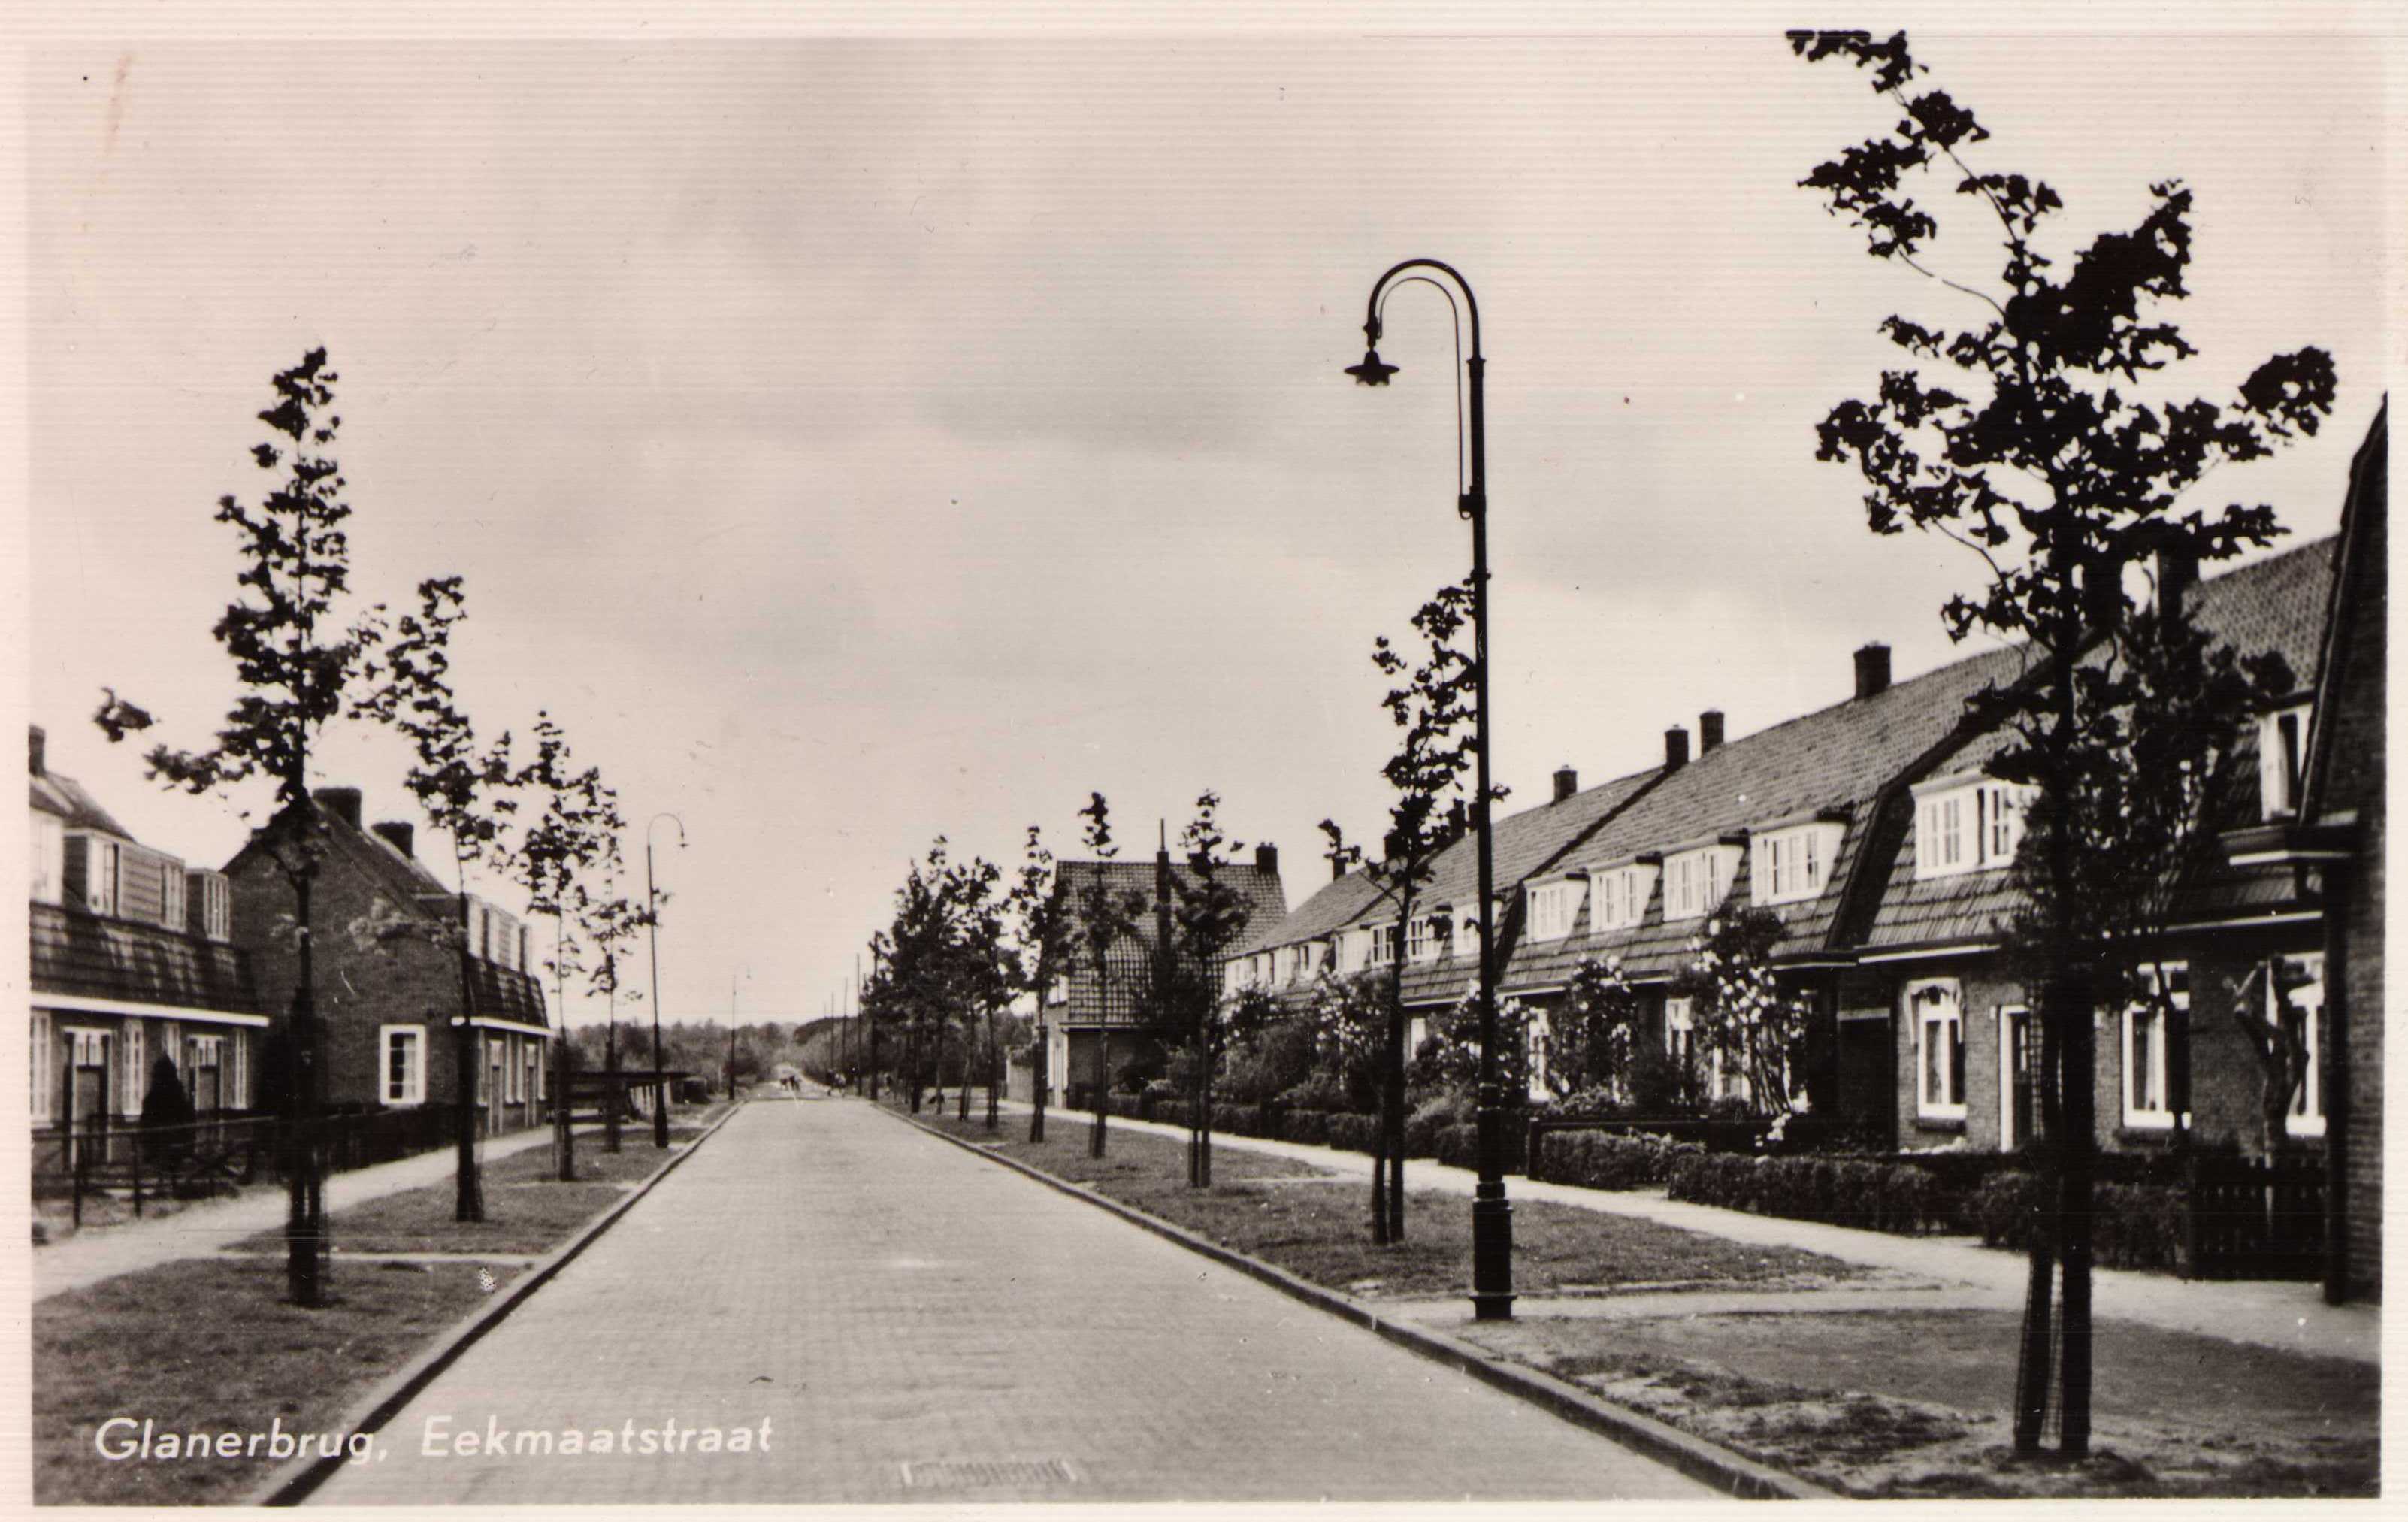 Glanerbrug-eekmaatstraat-1955-3e354aa8.jpg